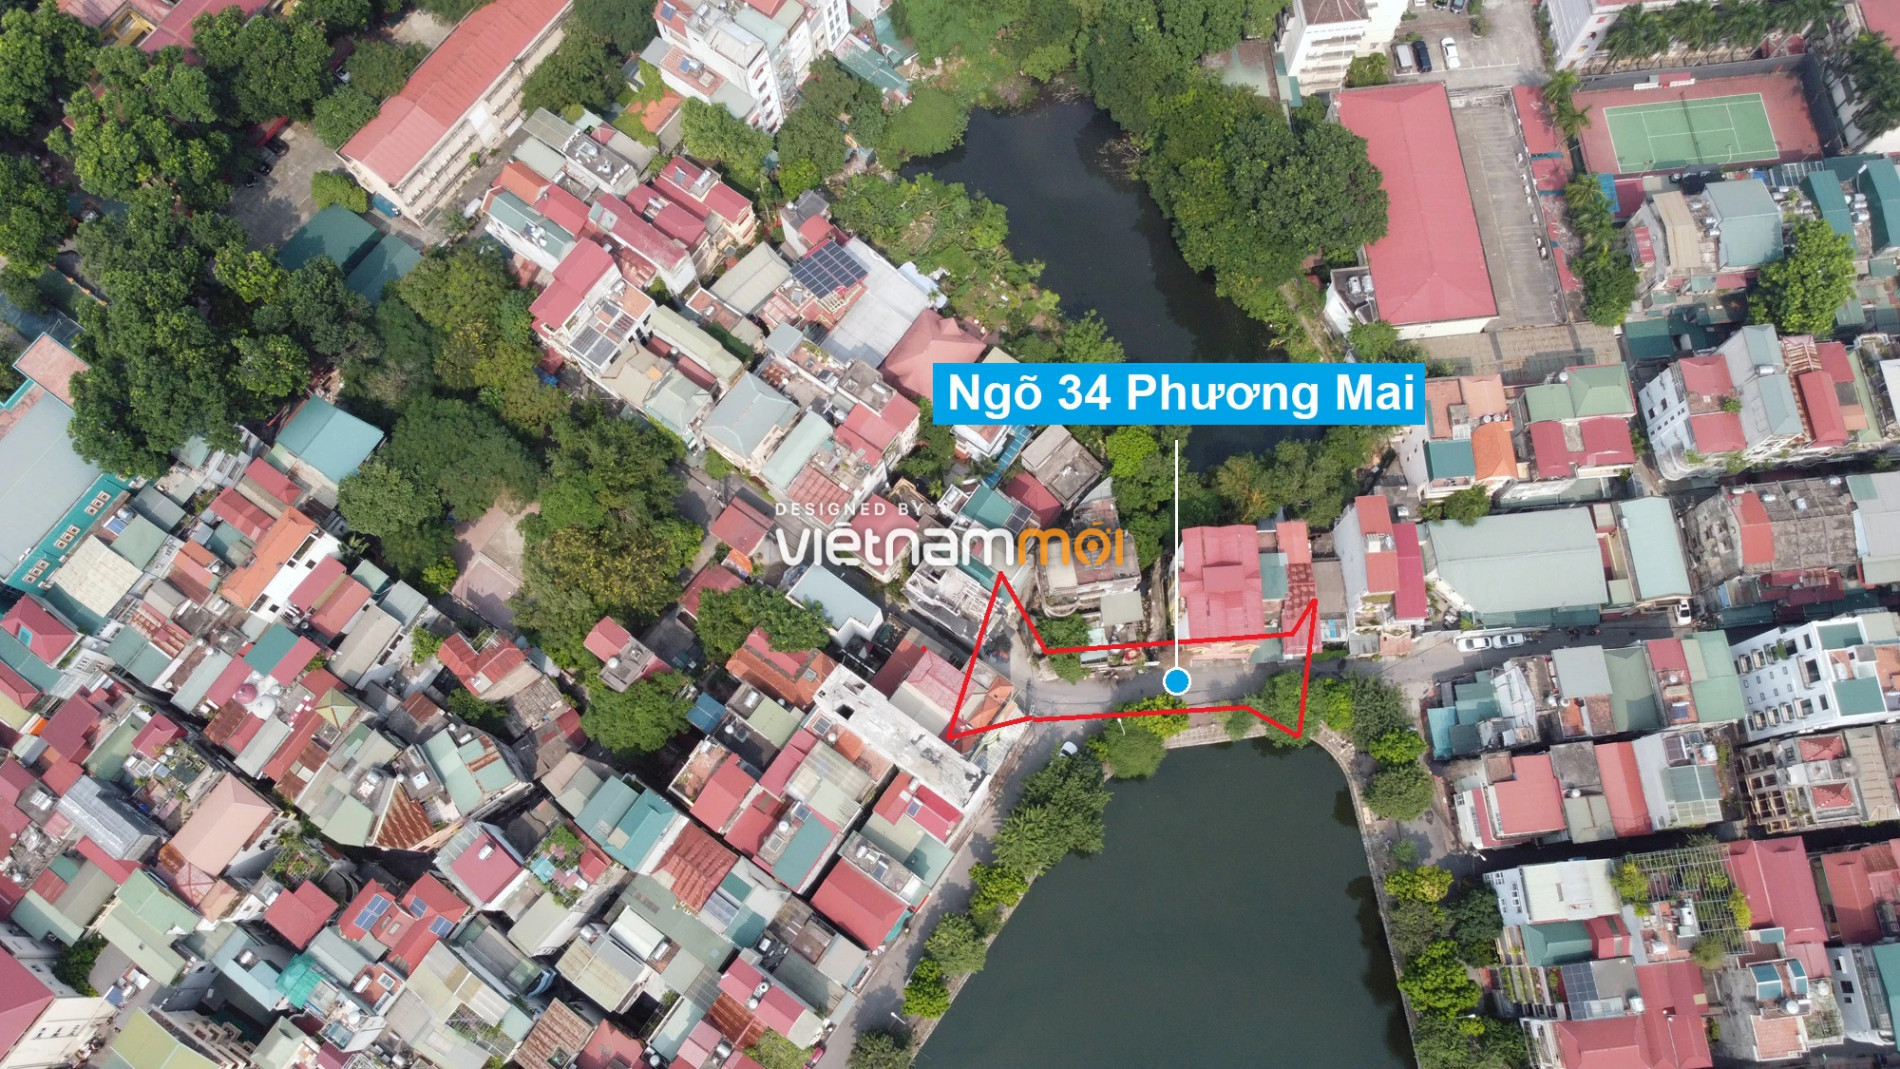 Những khu đất sắp thu hồi để mở đường ở quận Đống Đa, Hà Nội (phần 2) - Ảnh 16.